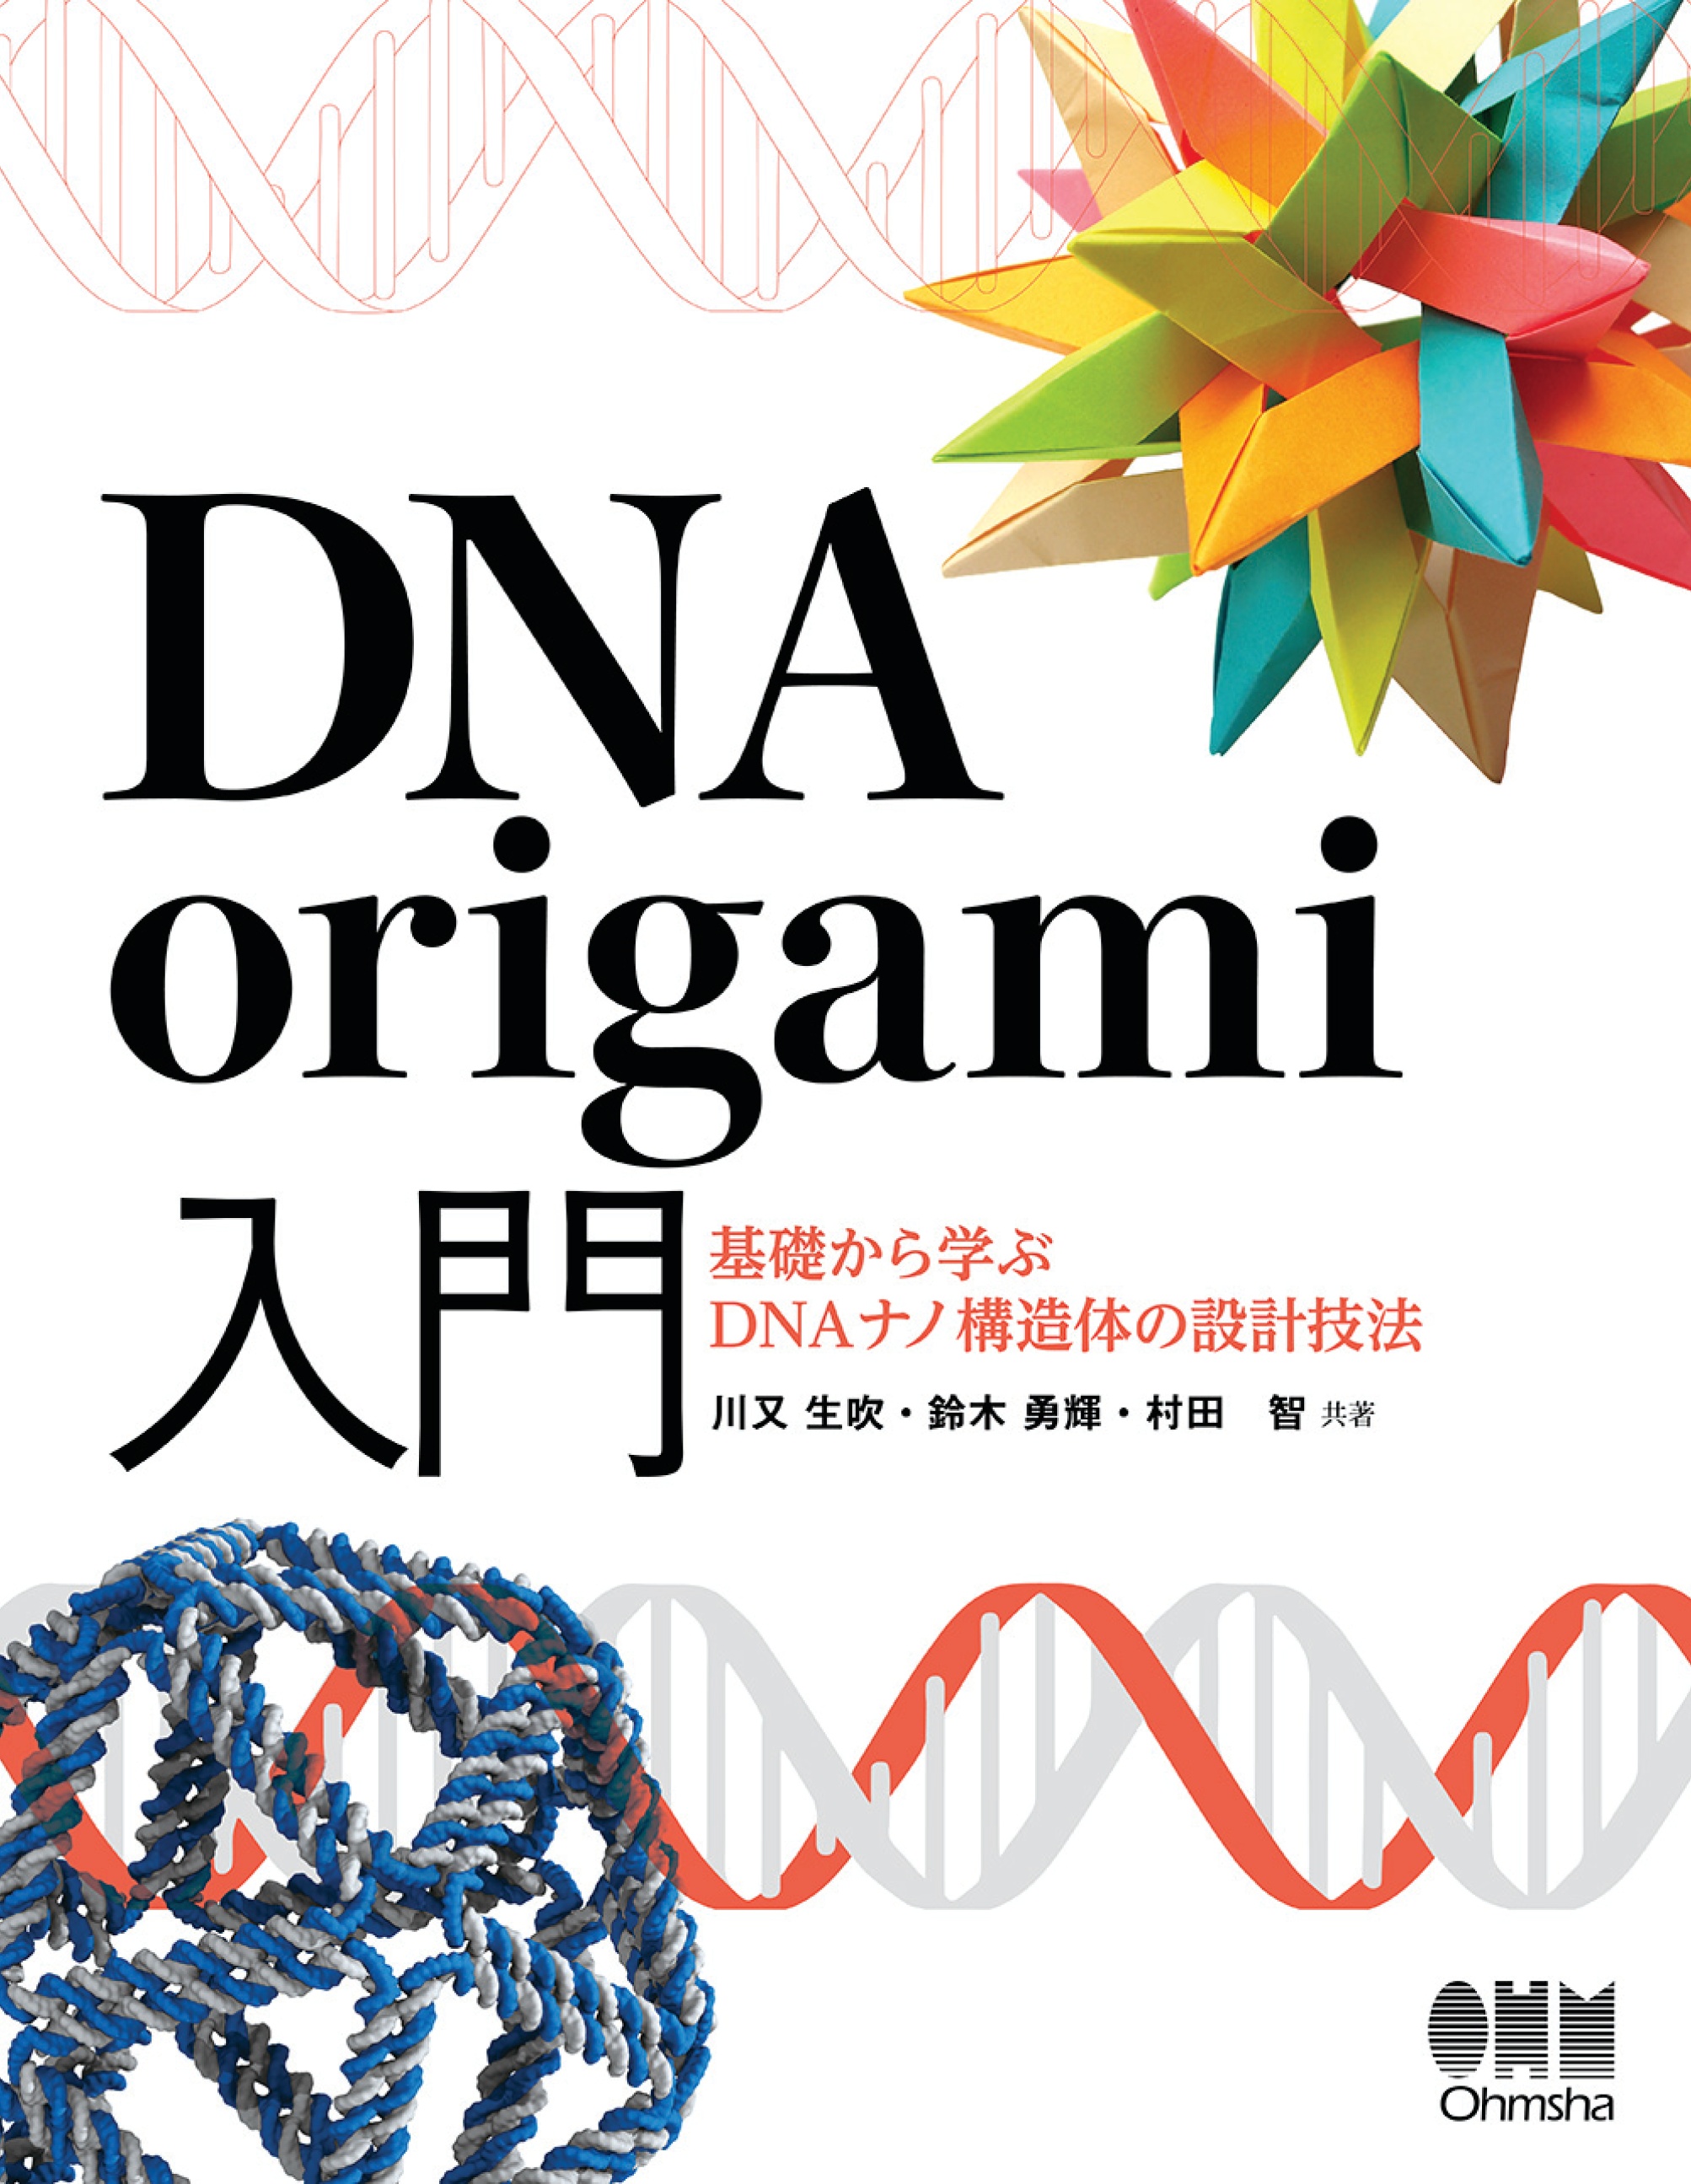 DNA origami入門 ―基礎から学ぶDNAナノ構造体の設計技法― - 川又生吹/鈴木勇輝 - 漫画・無料試し読みなら、電子書籍ストア ブックライブ